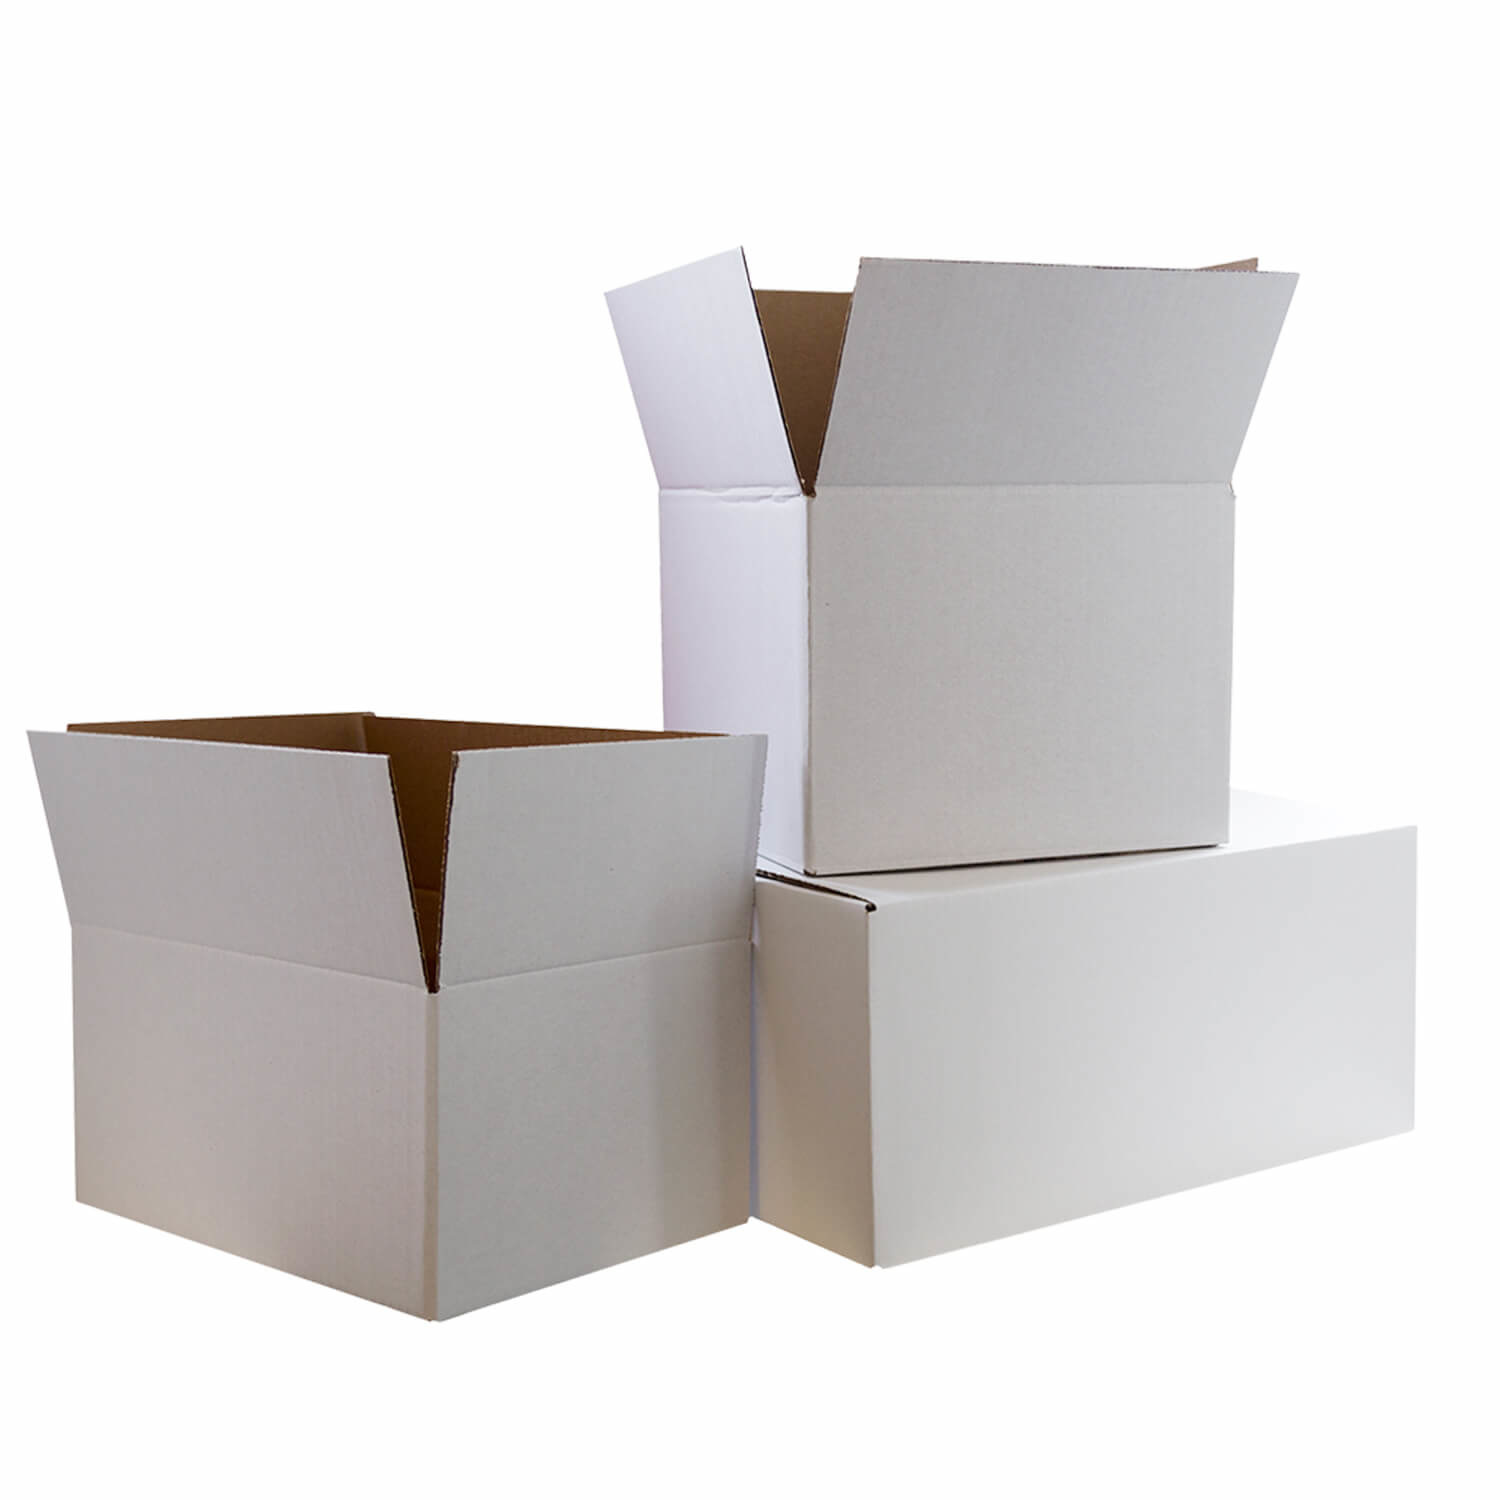 Silicium zo opbouwen Kartonnen dozen Wit 305x215x150mm online kopen - Al vanaf €inf per stuk !